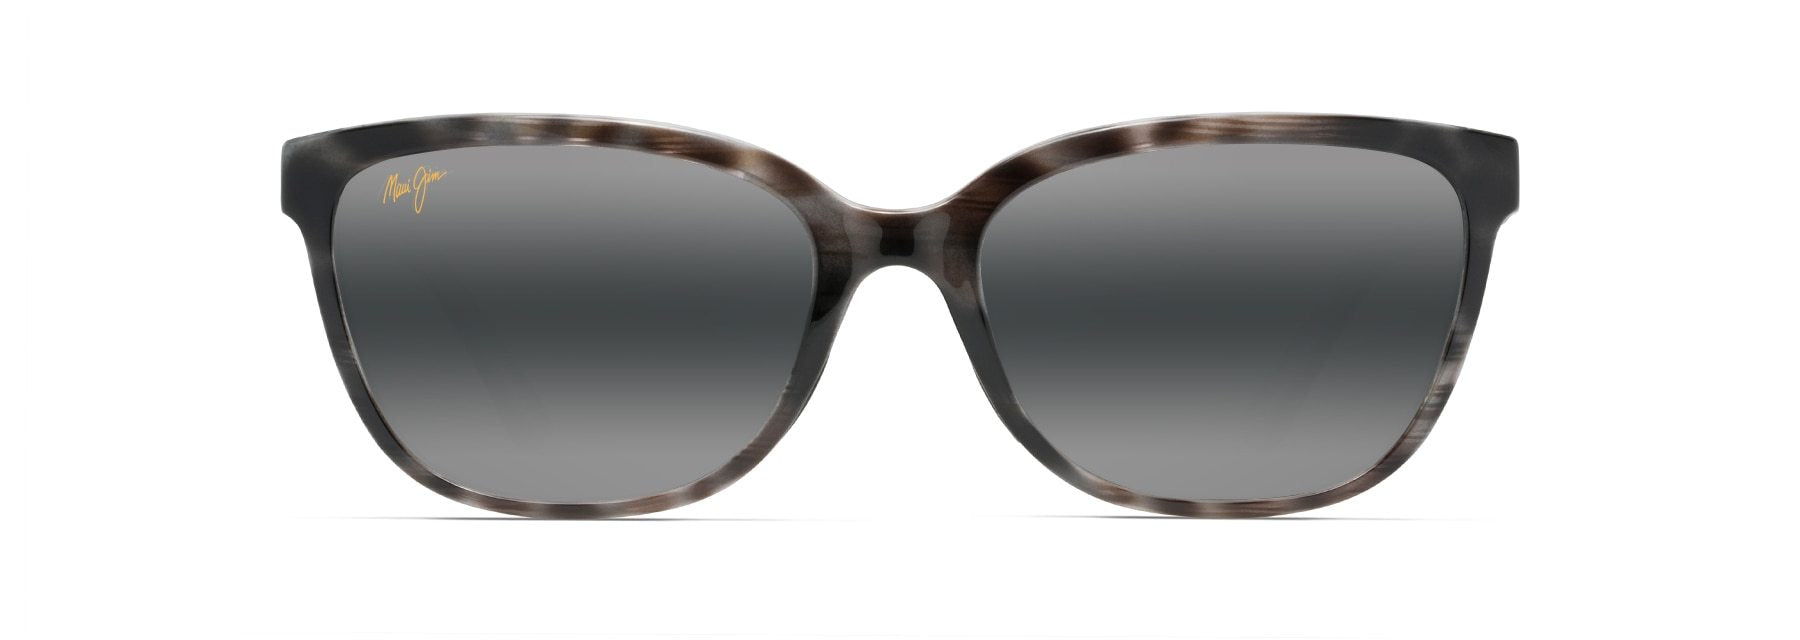 MyMaui Honi MM758-013 Sunglasses